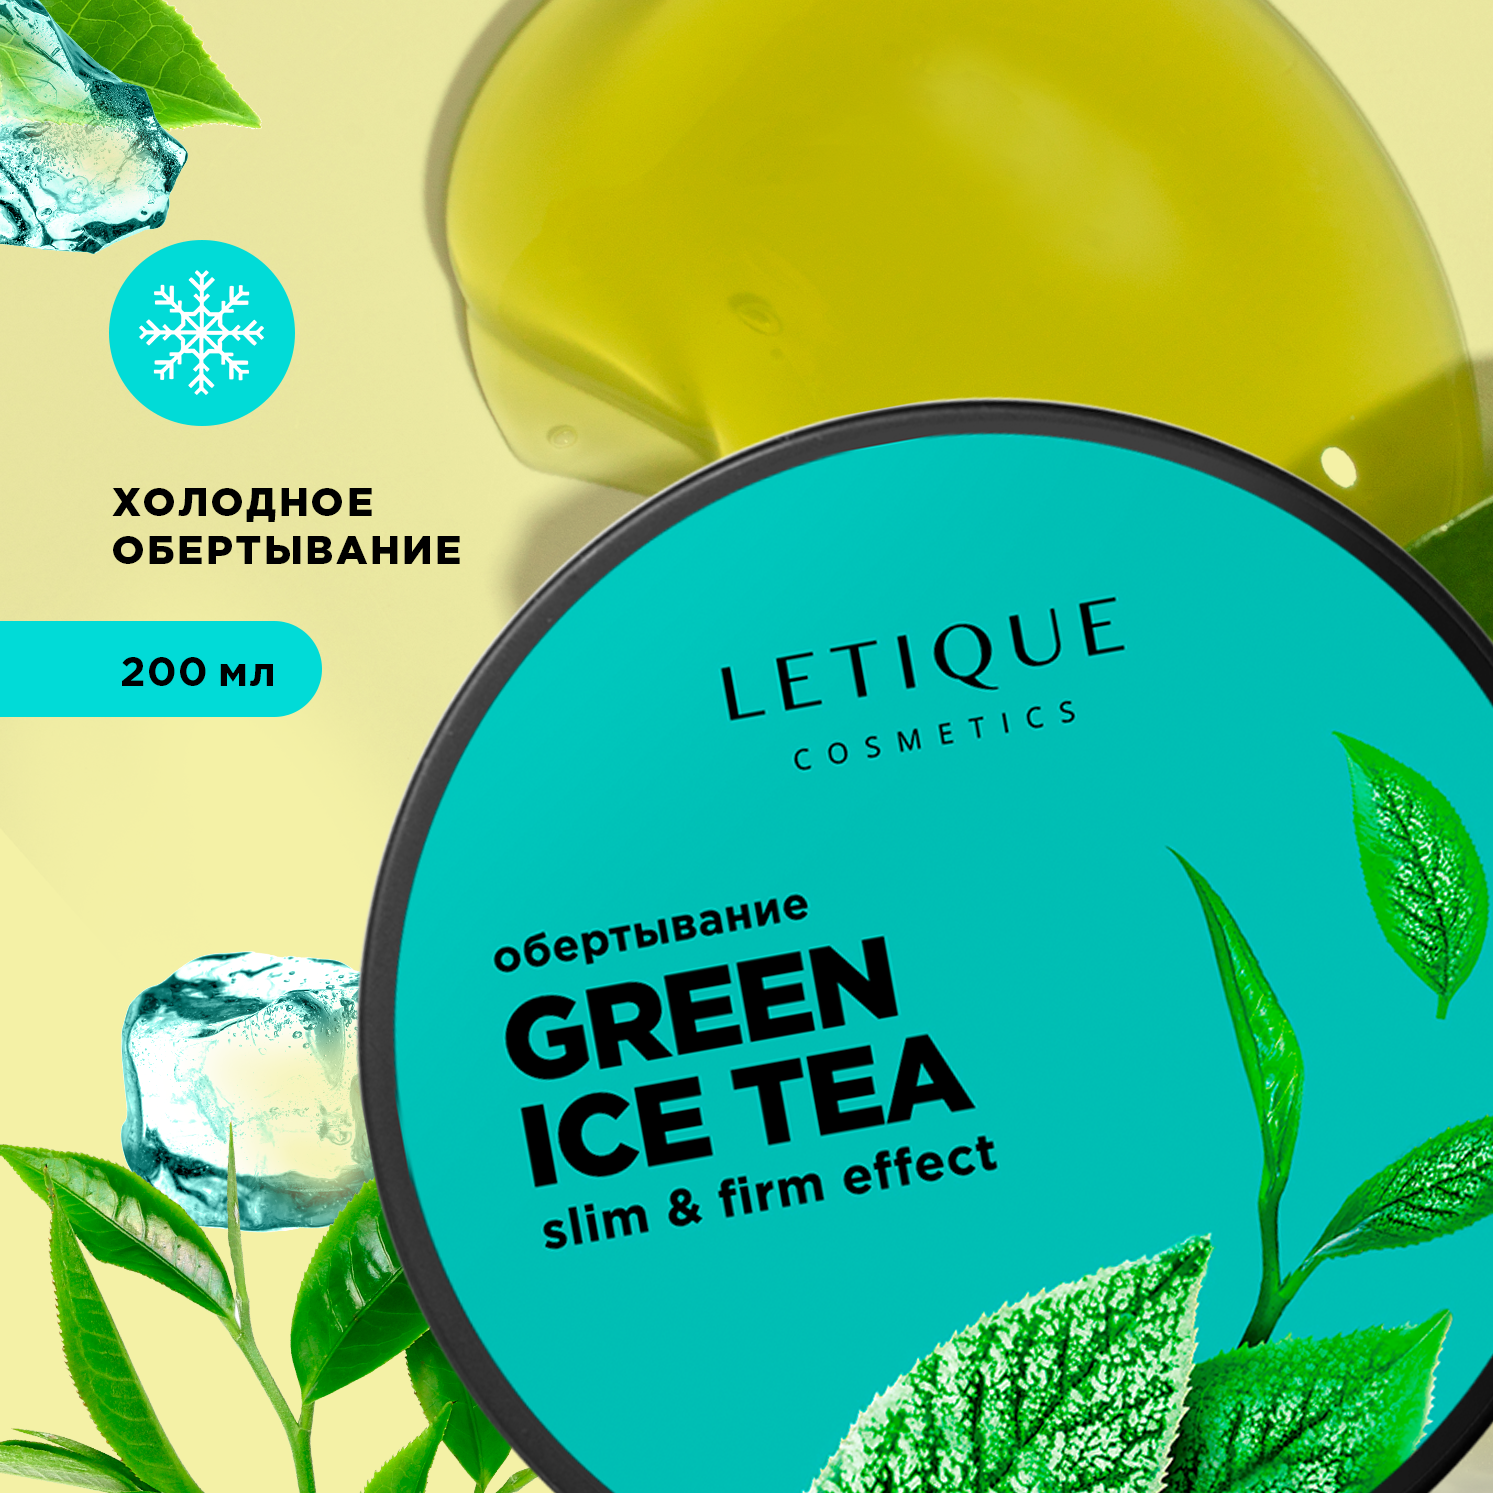 Обертывание холодное для тела Letique Cosmetics Green Ice Tea queulik обертывание антицеллюлитное холодное для тела шоколадное